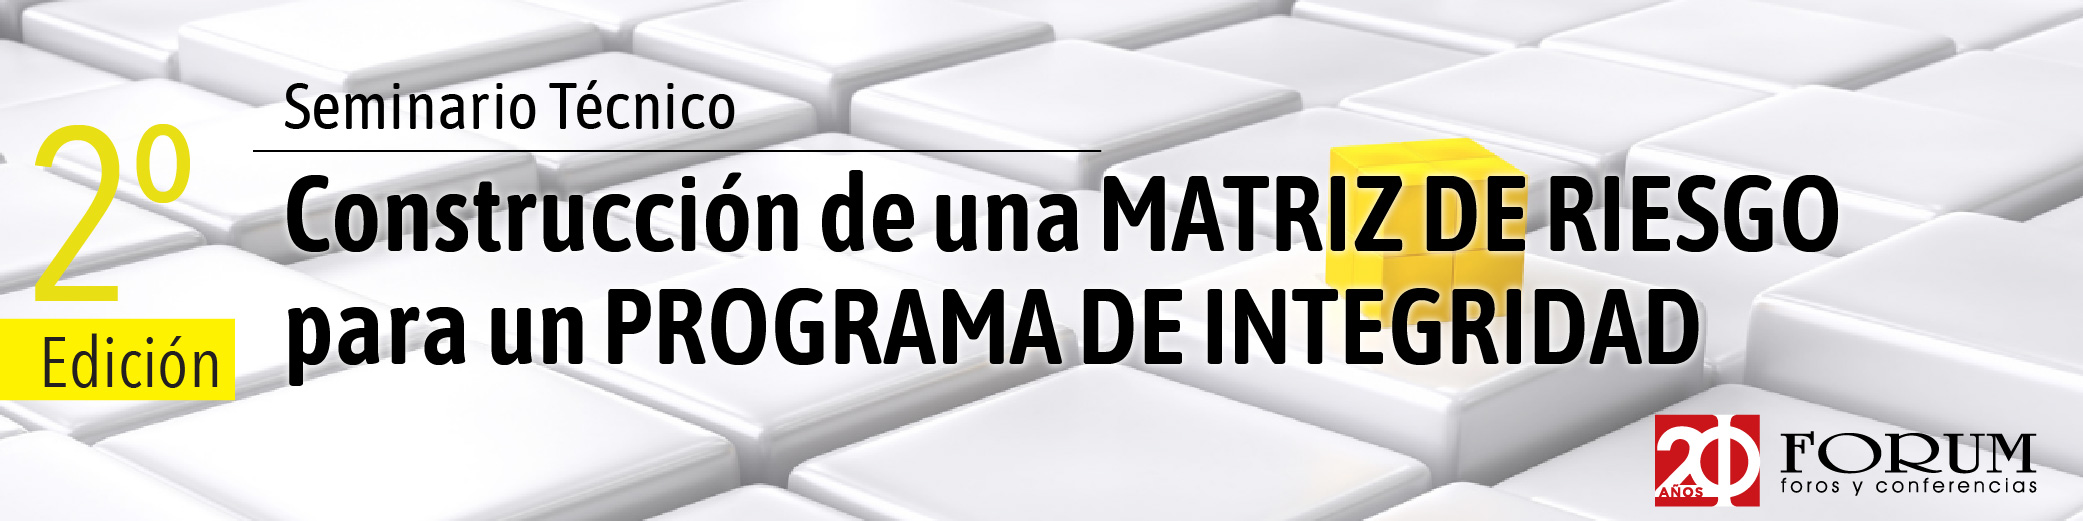 Forum .: Matriz de Riesgo para un Programa de Integridad - 2da Edición :.